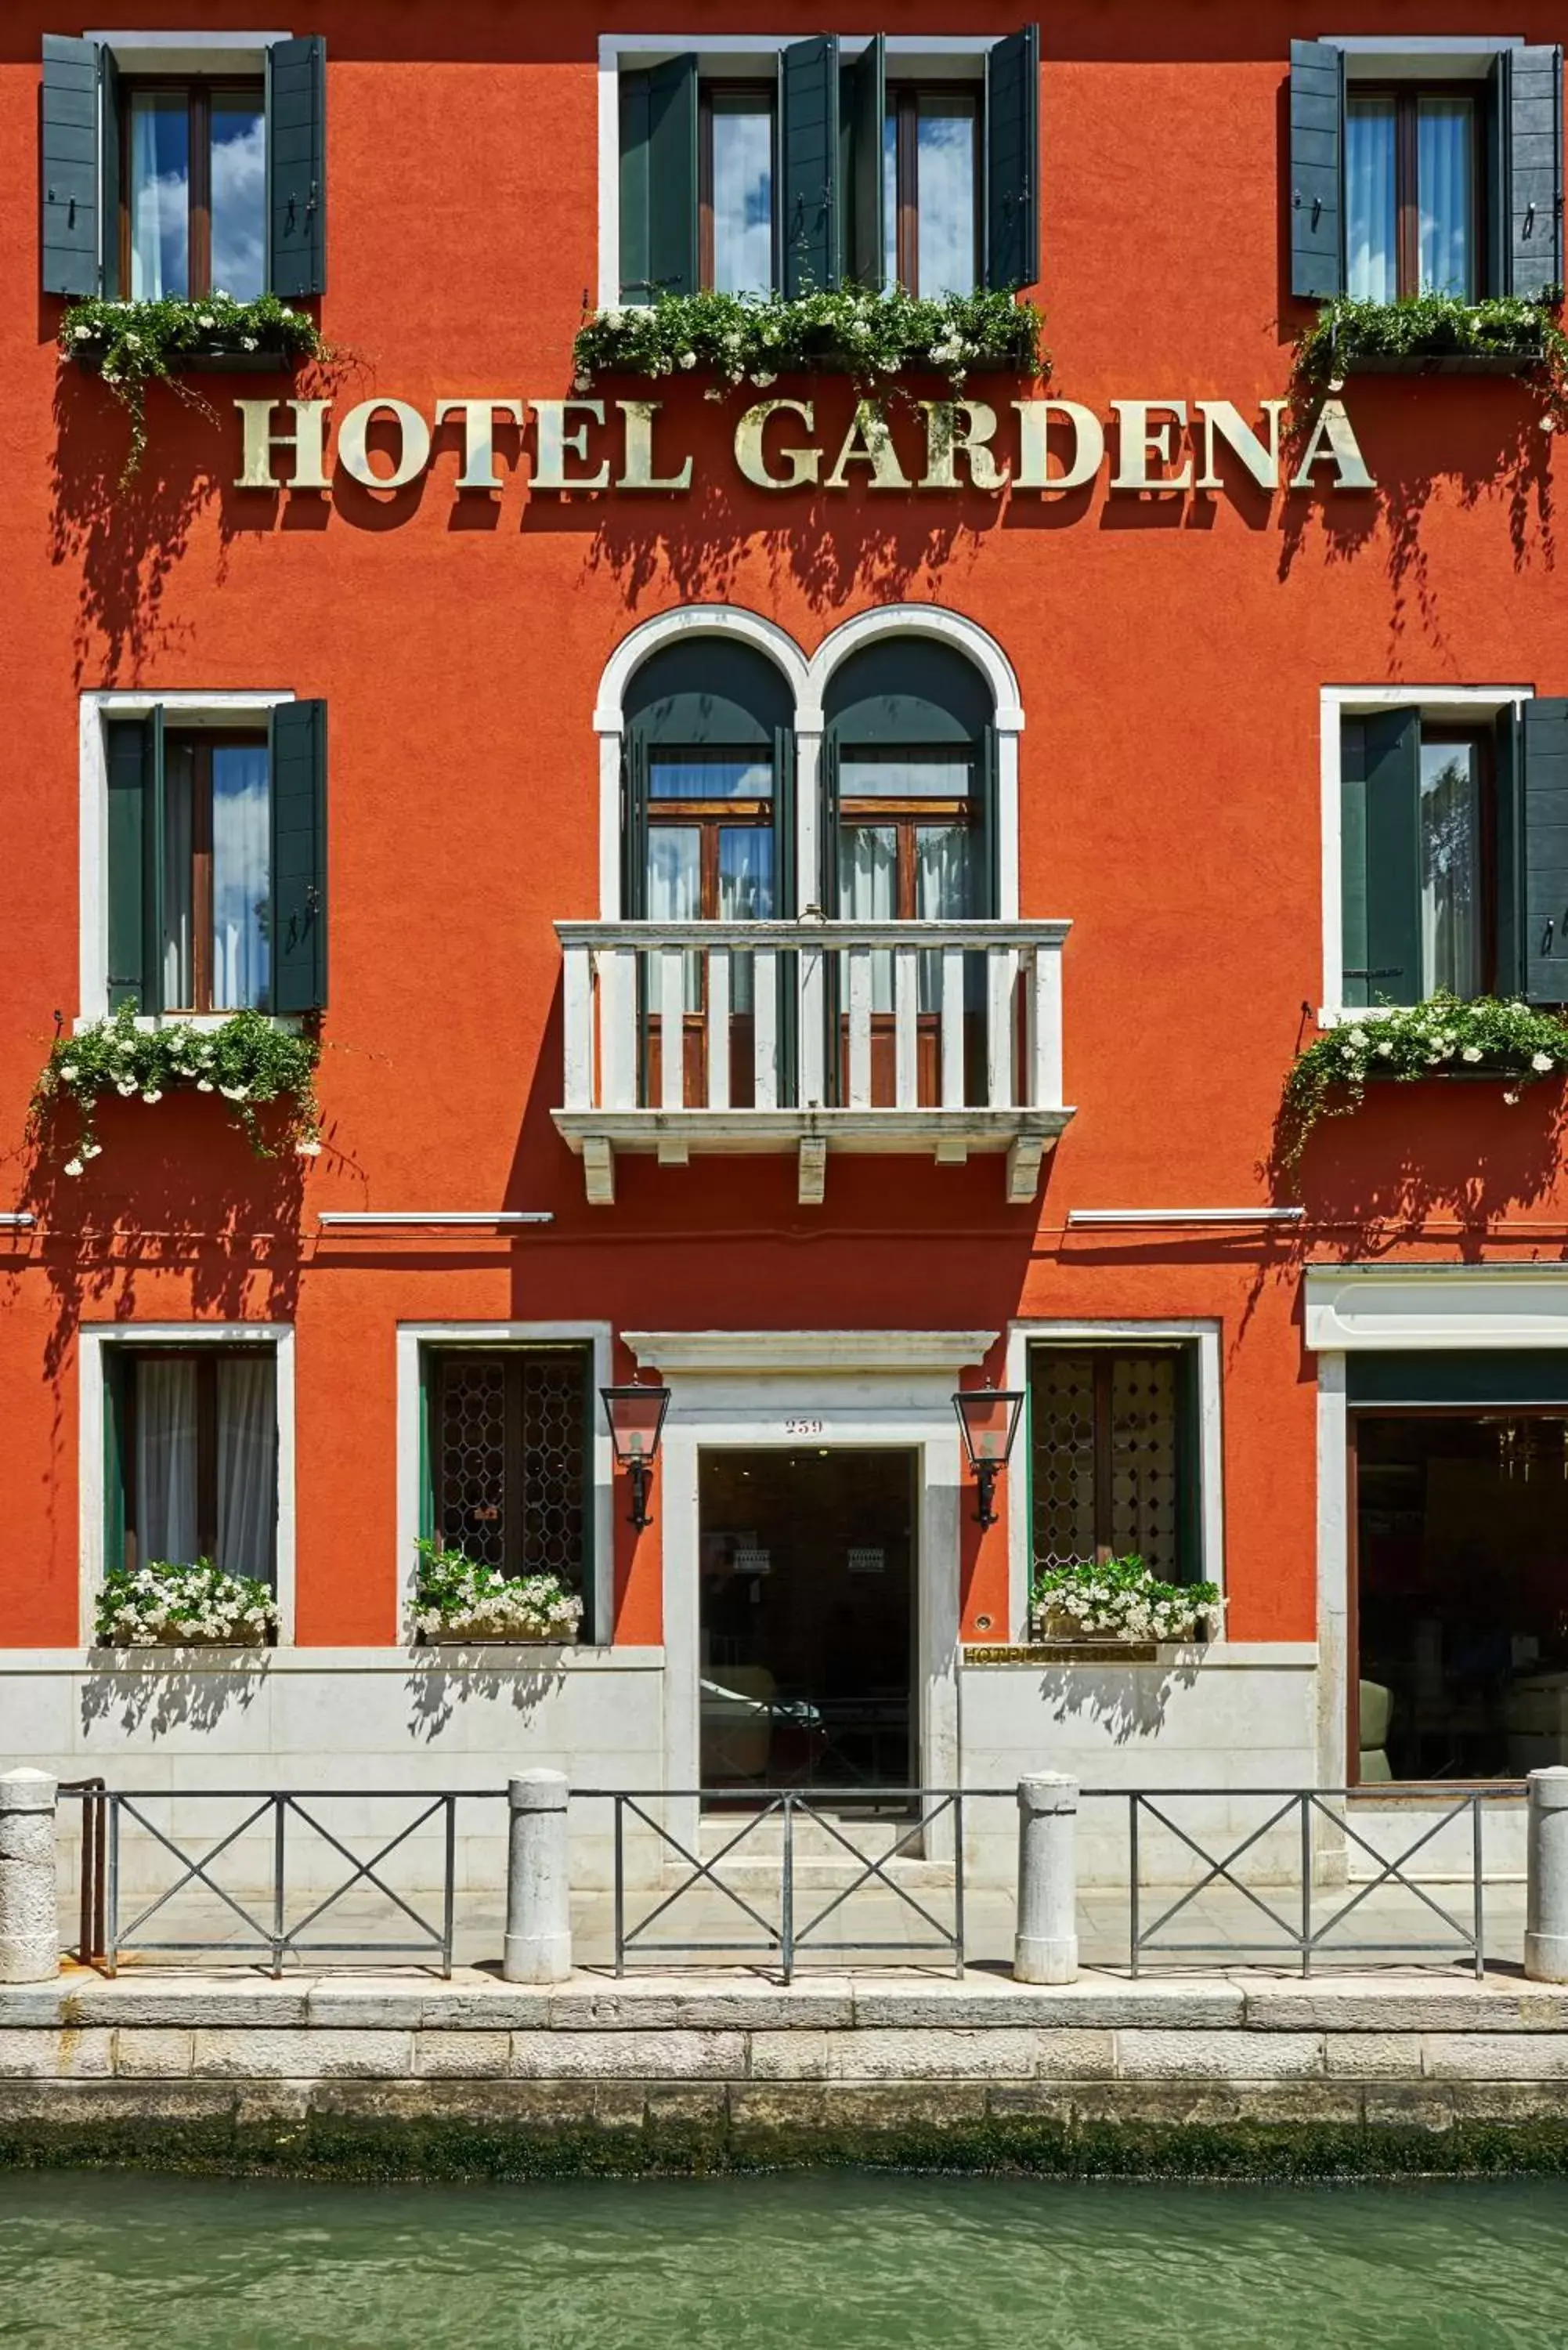 Facade/Entrance in Hotel Gardena